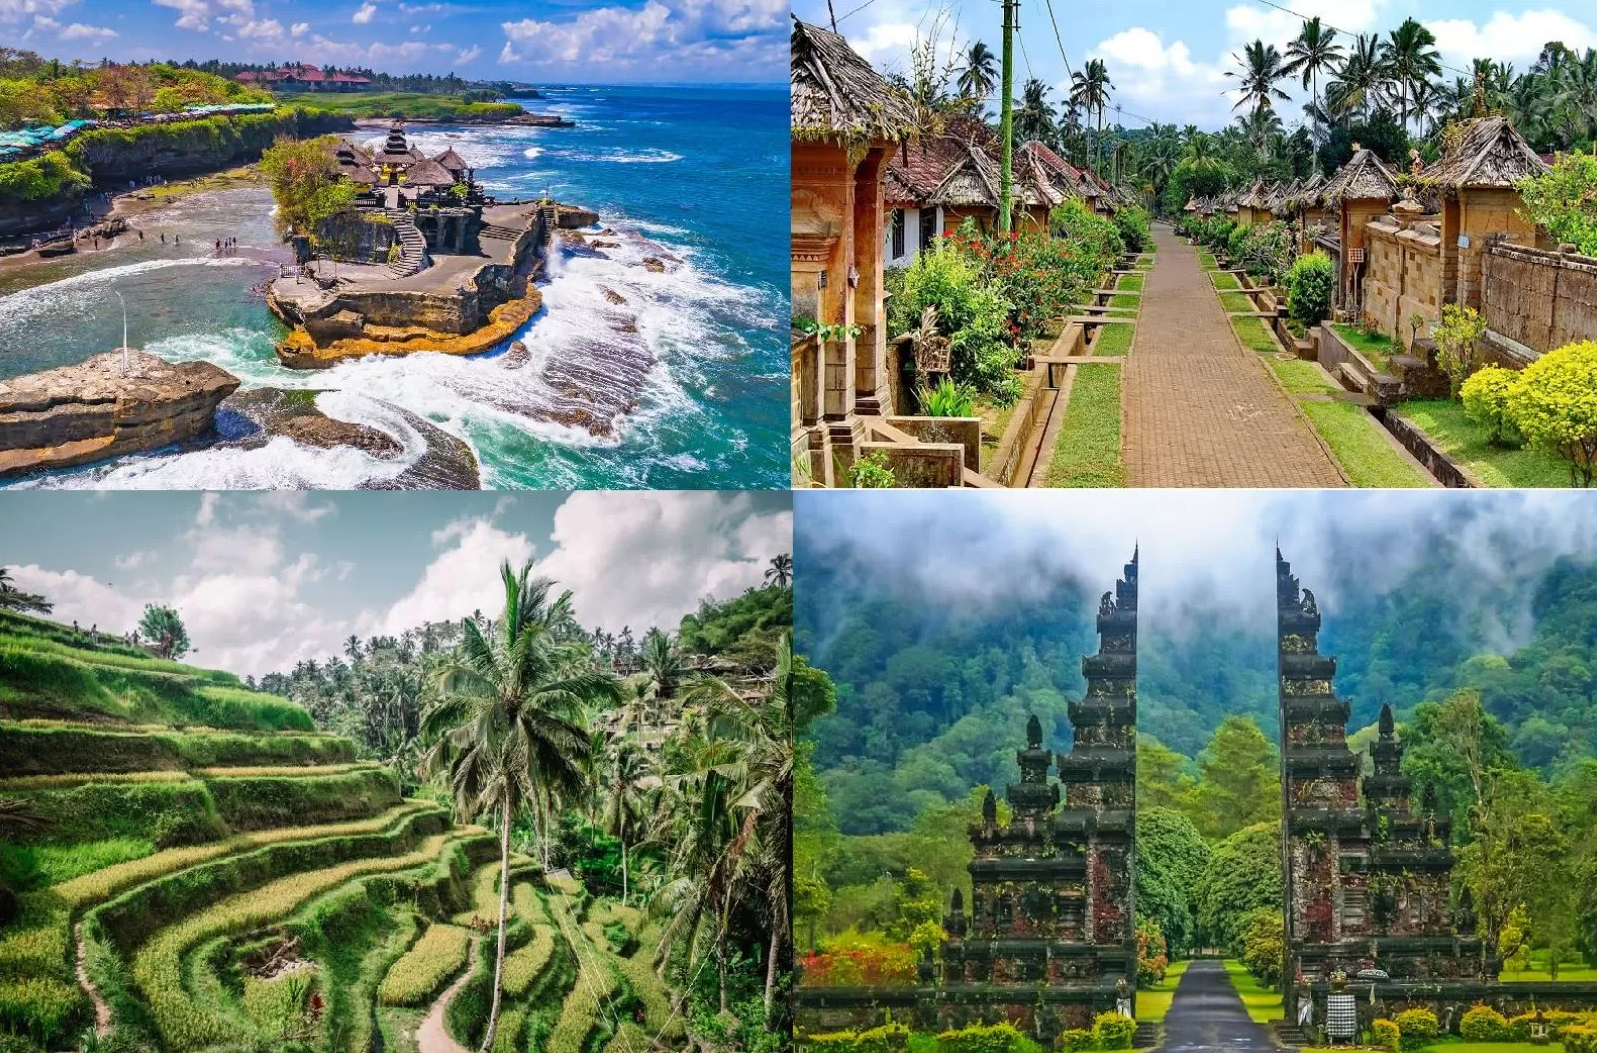 Panduan Wisata Bali: Menikmati Keindahan Alam, Budaya, dan Kuliner Pulau Dewata